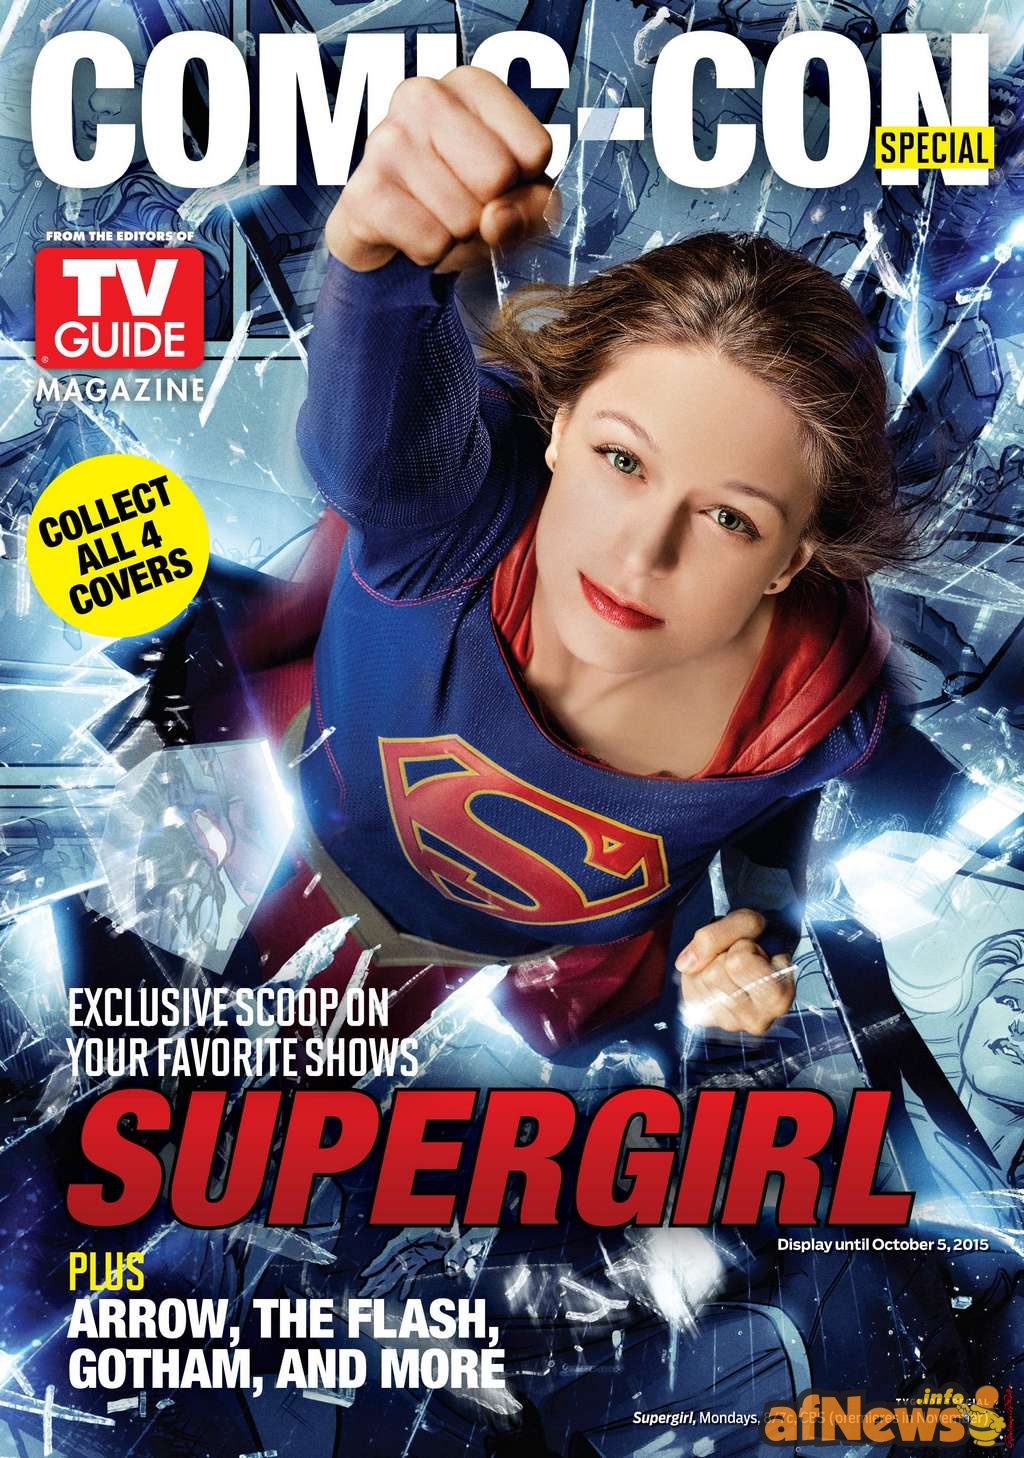 2015-06-30-afnews.info-SUPERGIRL-TV-Guide-cover-1939econv